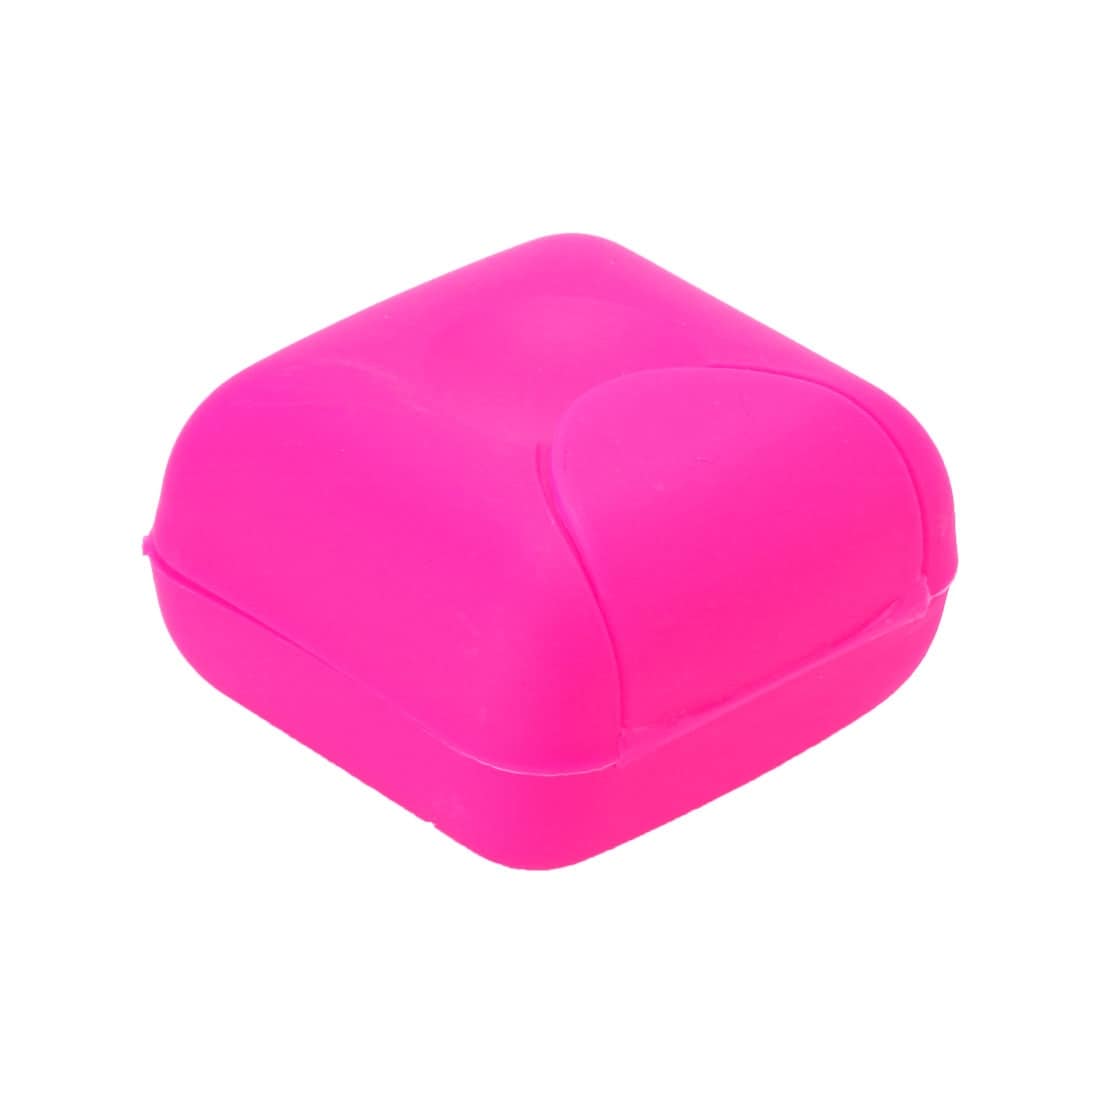 Plastic Houseware Travel Mini Soap Dish Box Holder Case Container - 2.6" x 2.6" x 1.6"(L*W*H)